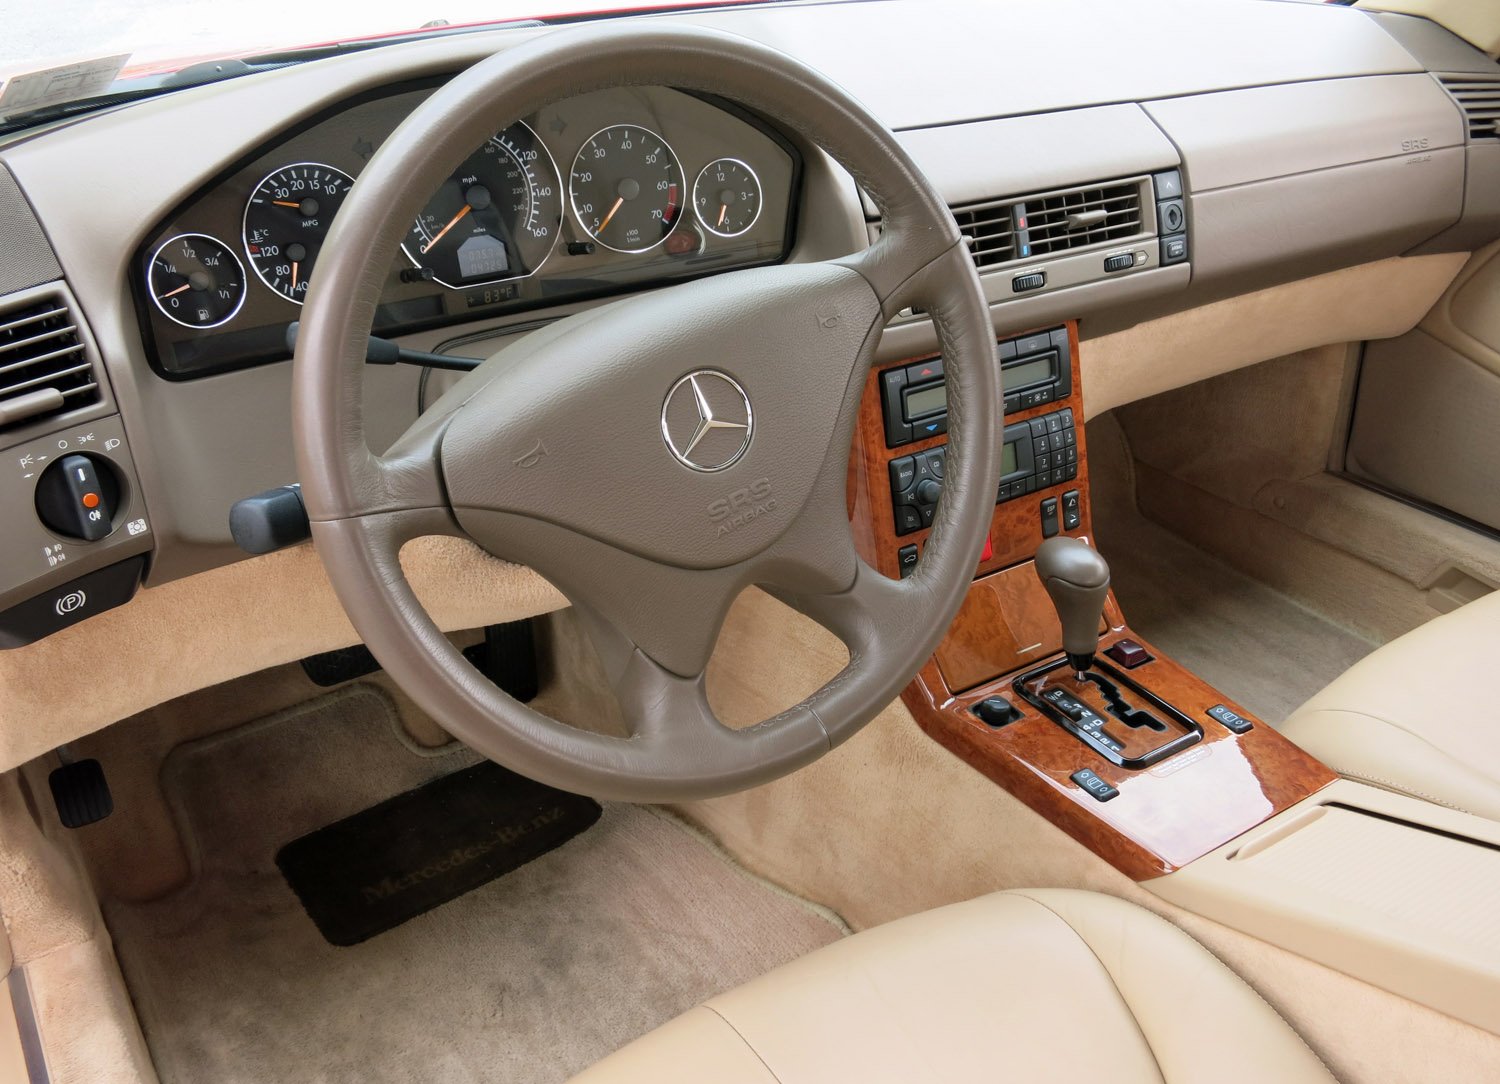 2001 Mercedes-Benz SL500